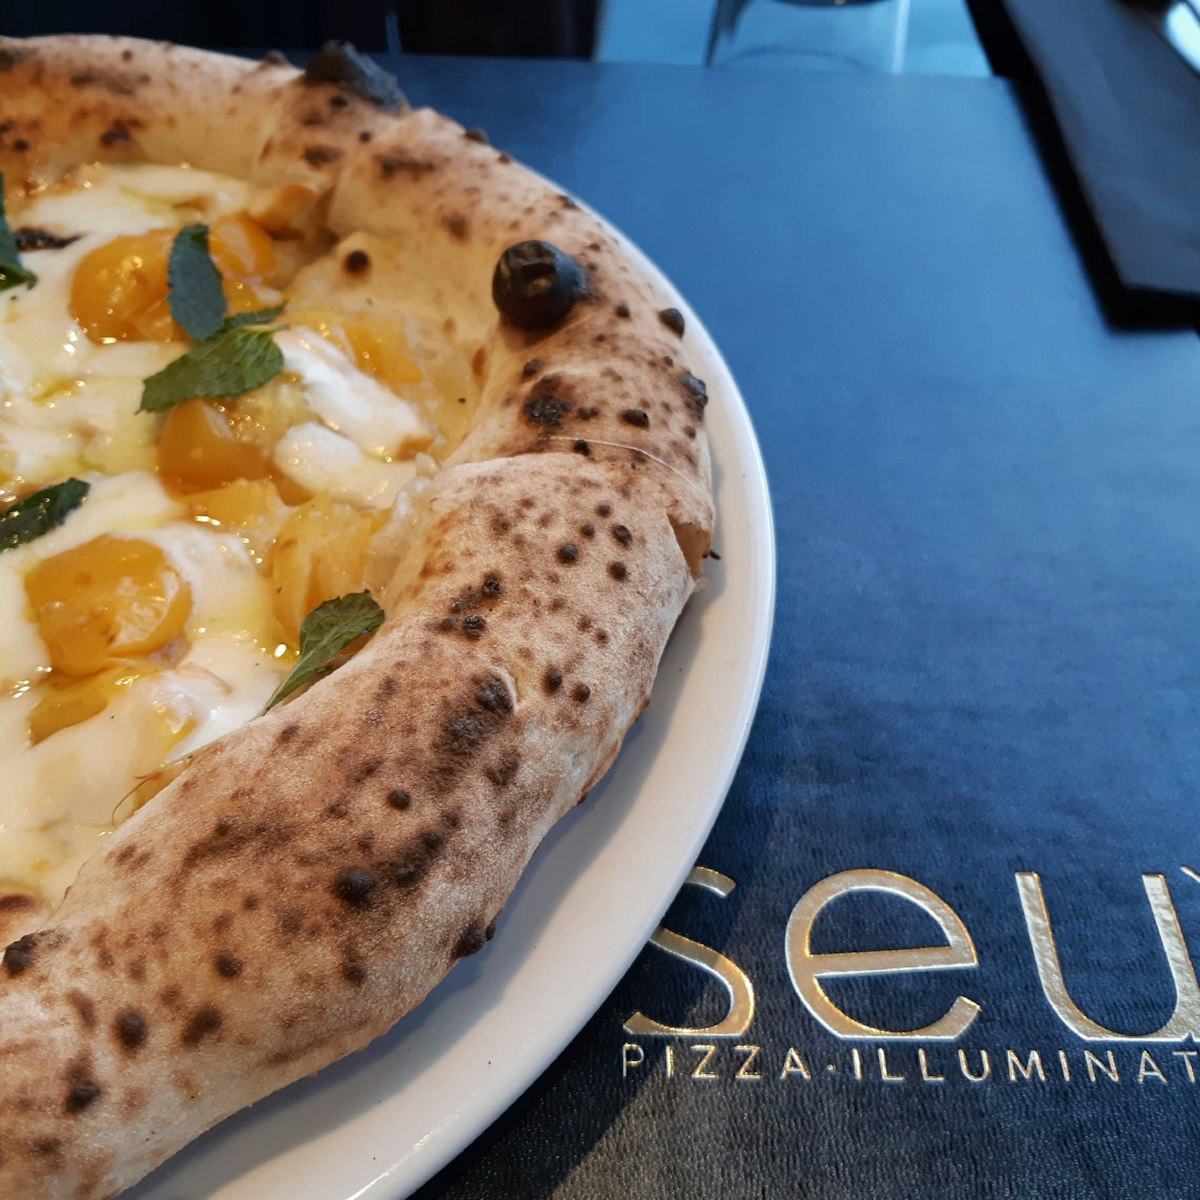 Smoked mozzarella, yellow tomatoes, and mint pizza at Seu Pizza Illuminati.